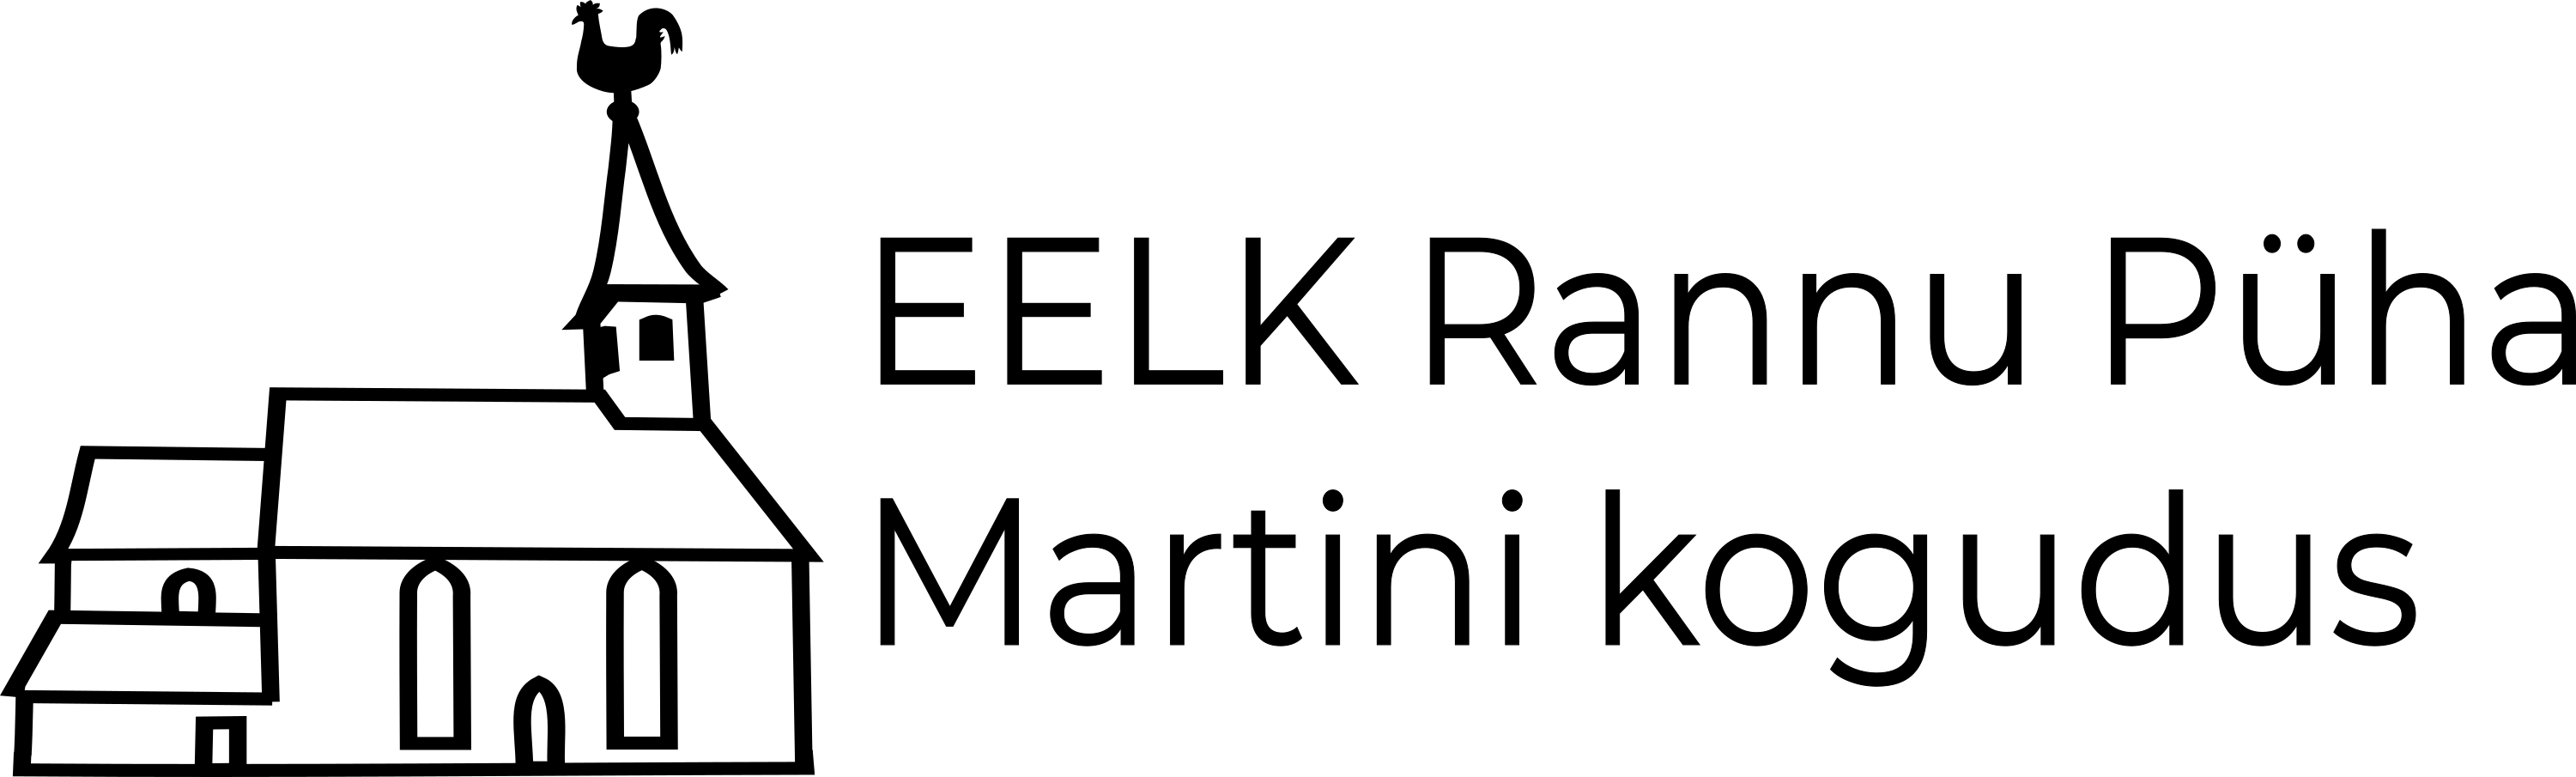 Rannu logo